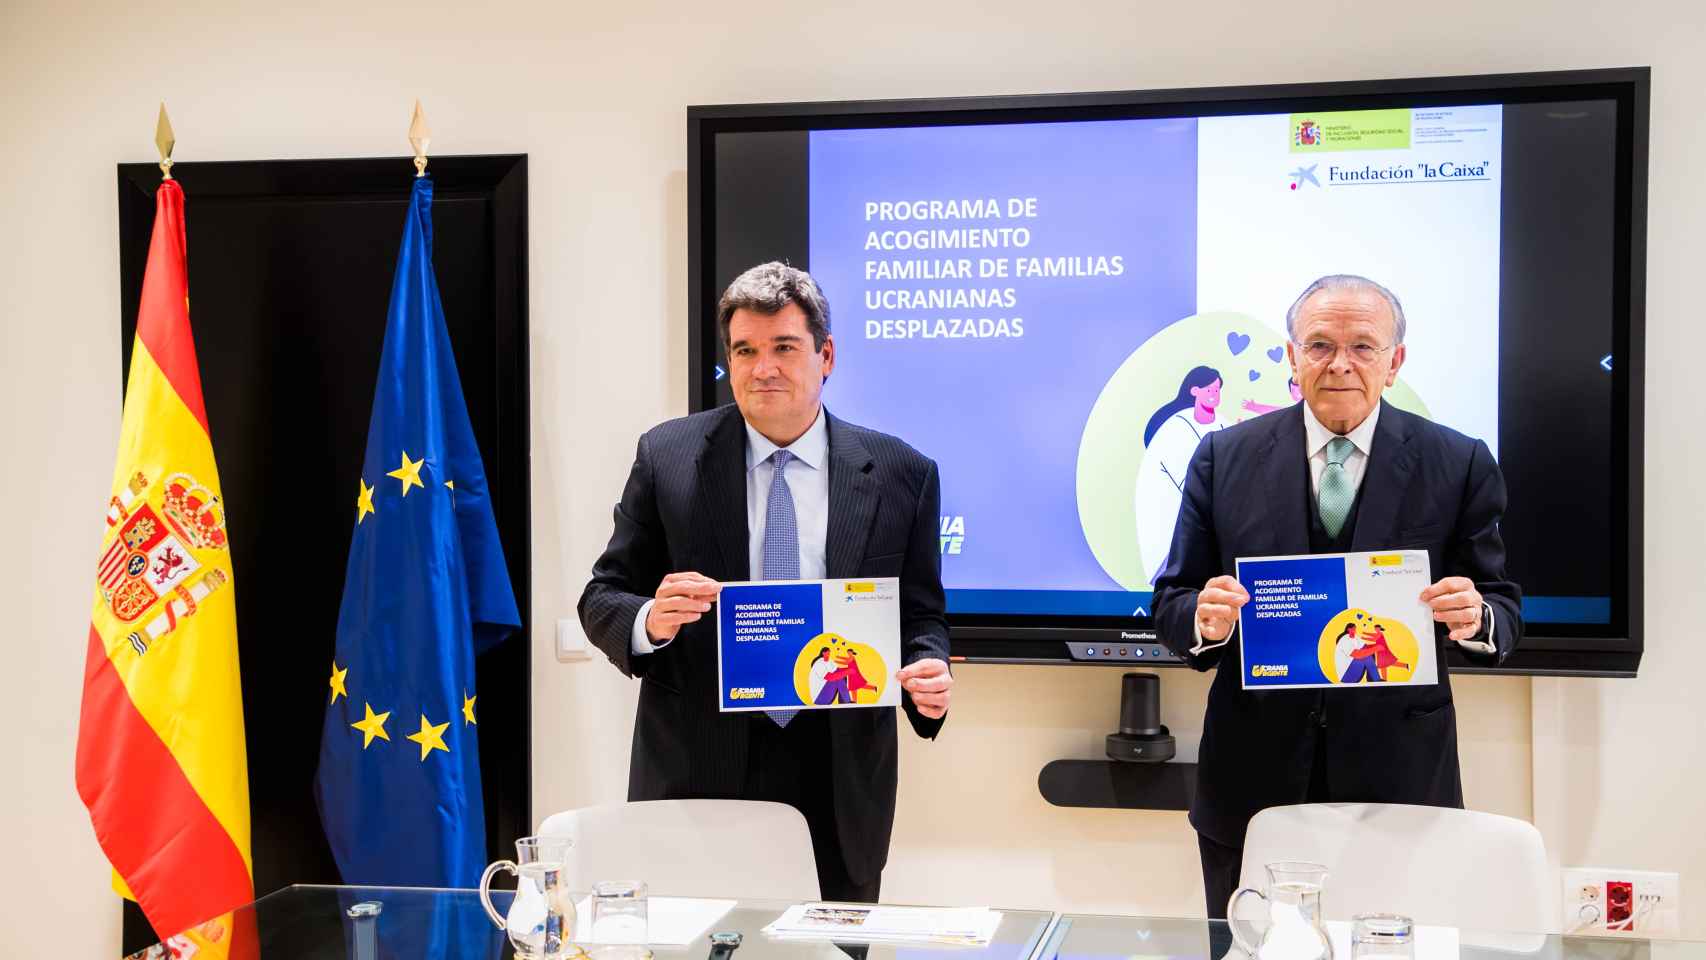 El ministro de Inclusión, Seguridad Social y Migraciones, José Luis Escrivá, y el presidente de la Fundación 'la Caixa', Isidro Fainé, durante la firma el acuerdo.